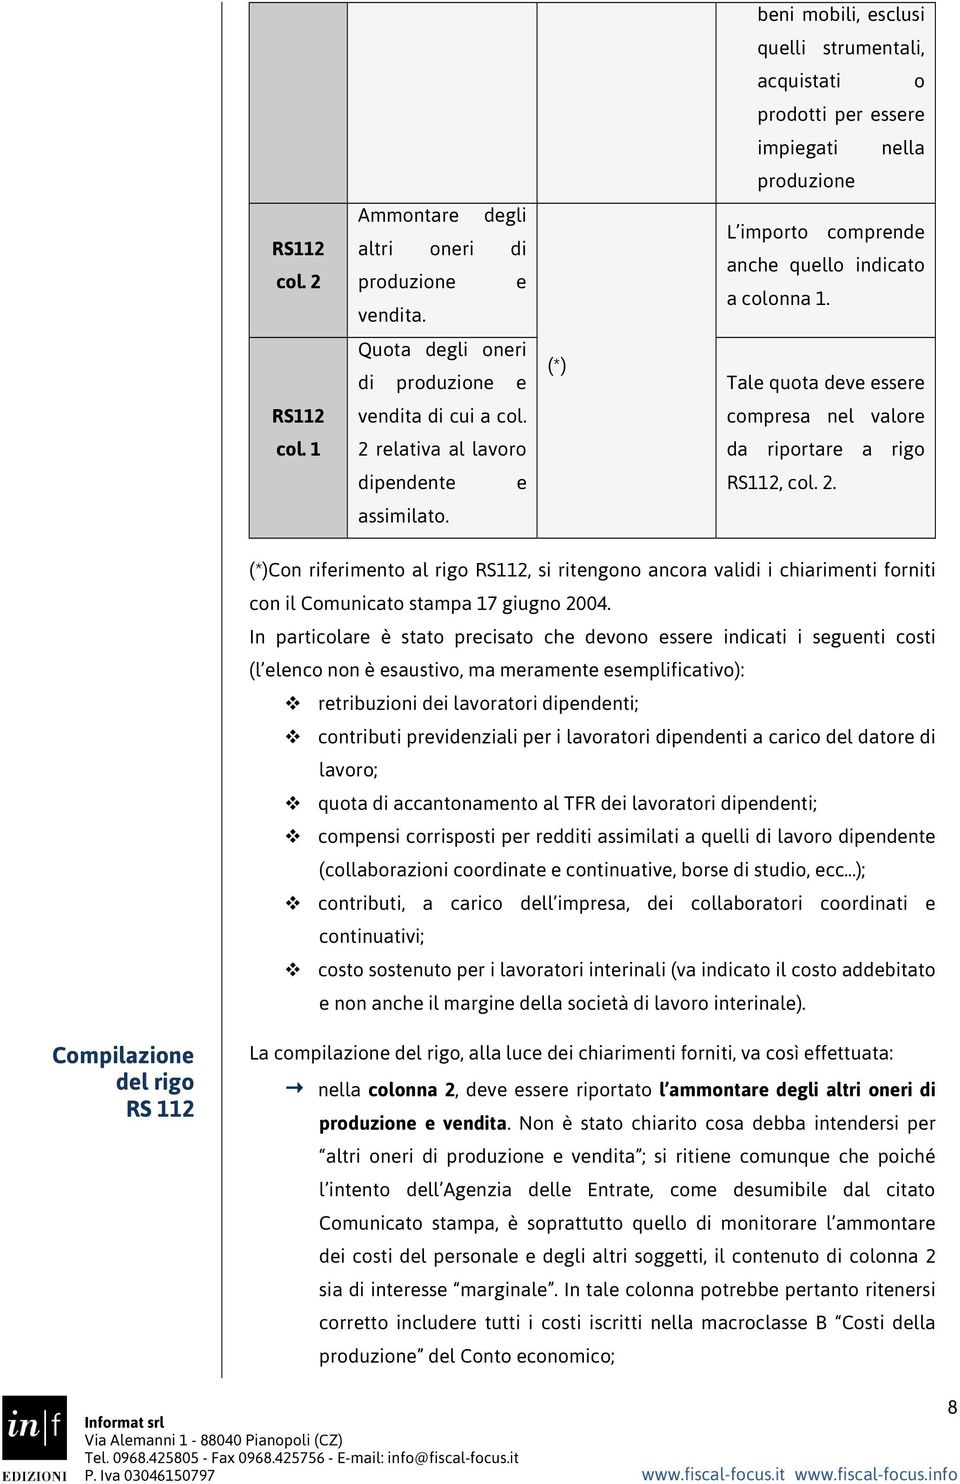 Tal quota dv ssr comprsa nl valor da riportar a rigo RS112, col. 2. (*)Con rifrimnto al rigo RS112, si ritngono ancora vali i chiarimnti forniti con il Comunicato stampa 17 giugno 2004.